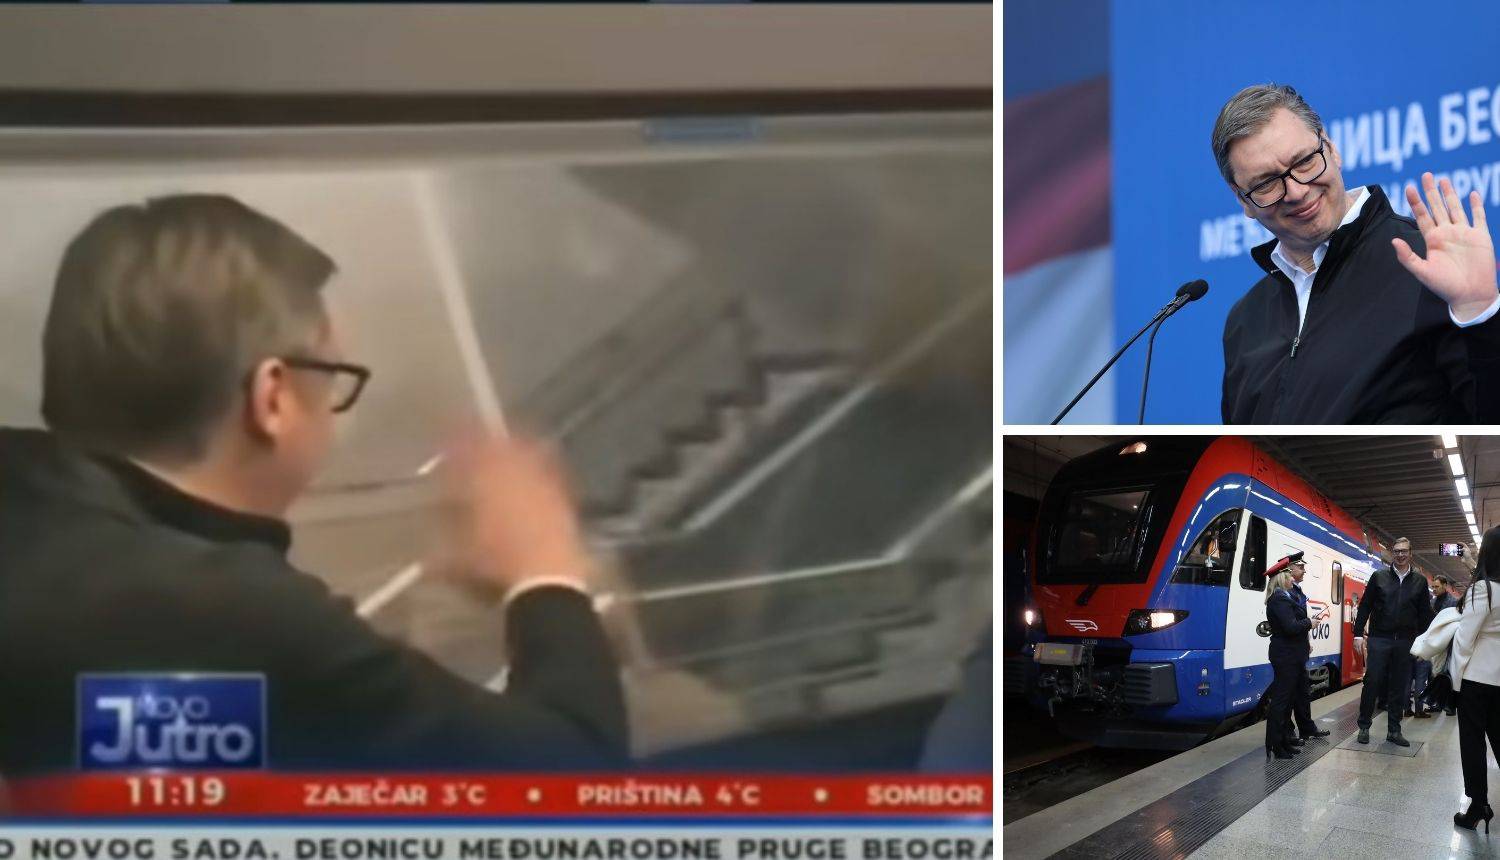 VIDEO Vučić maše i maše u prazno, a Orbanu ništa jasno